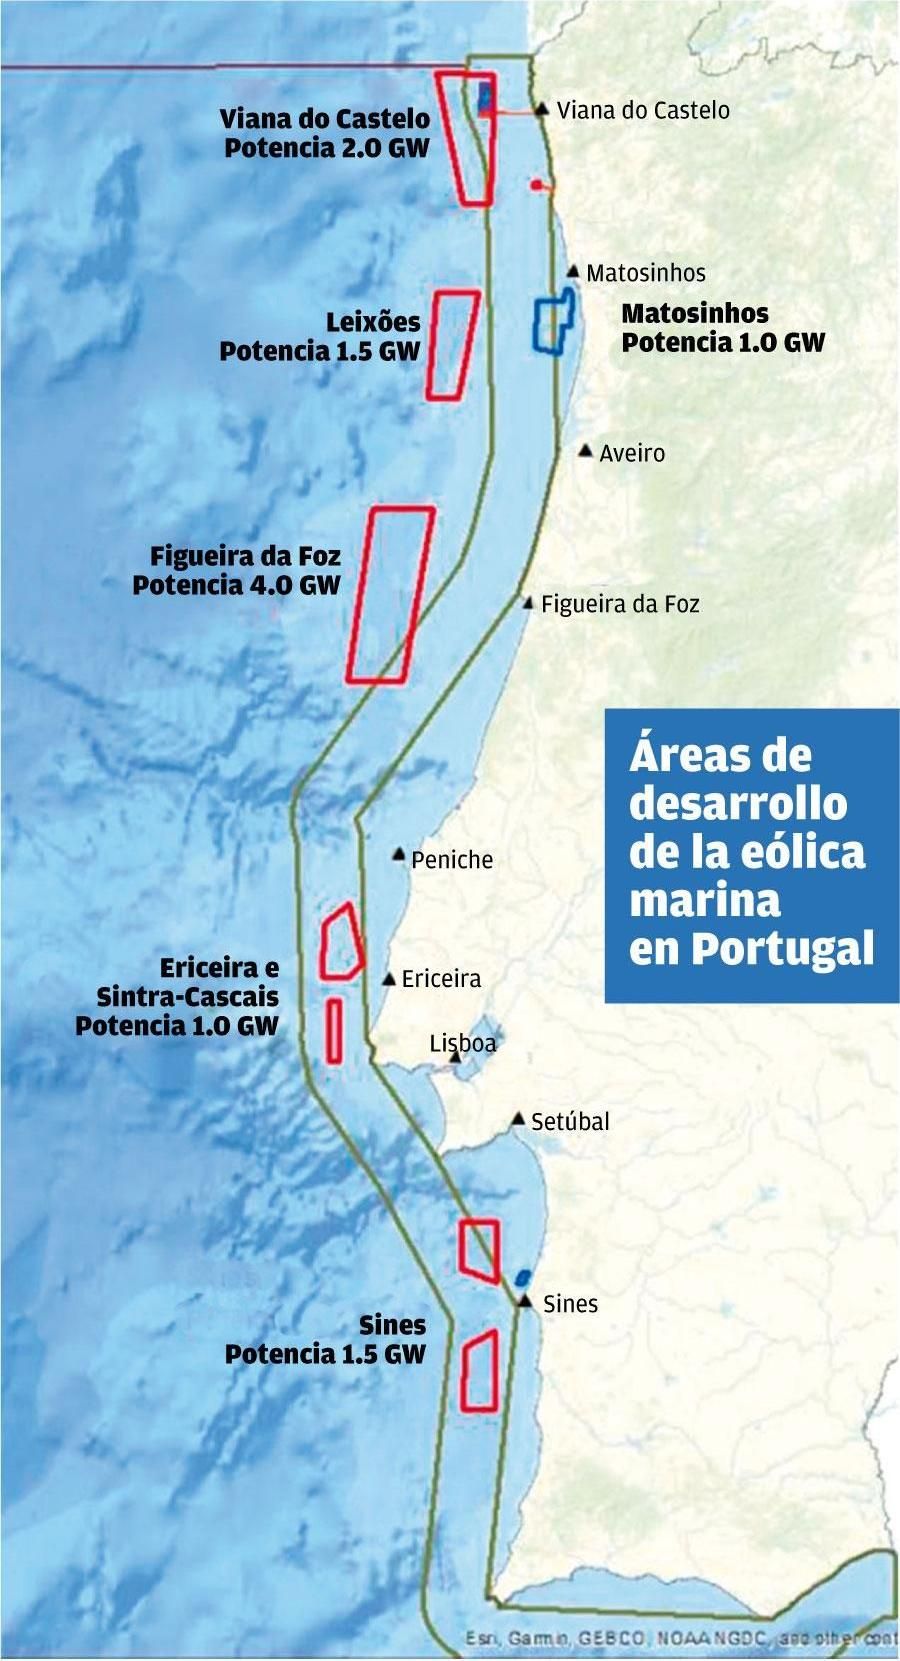 Distribución de los parques eólicos marinos de Portugal.